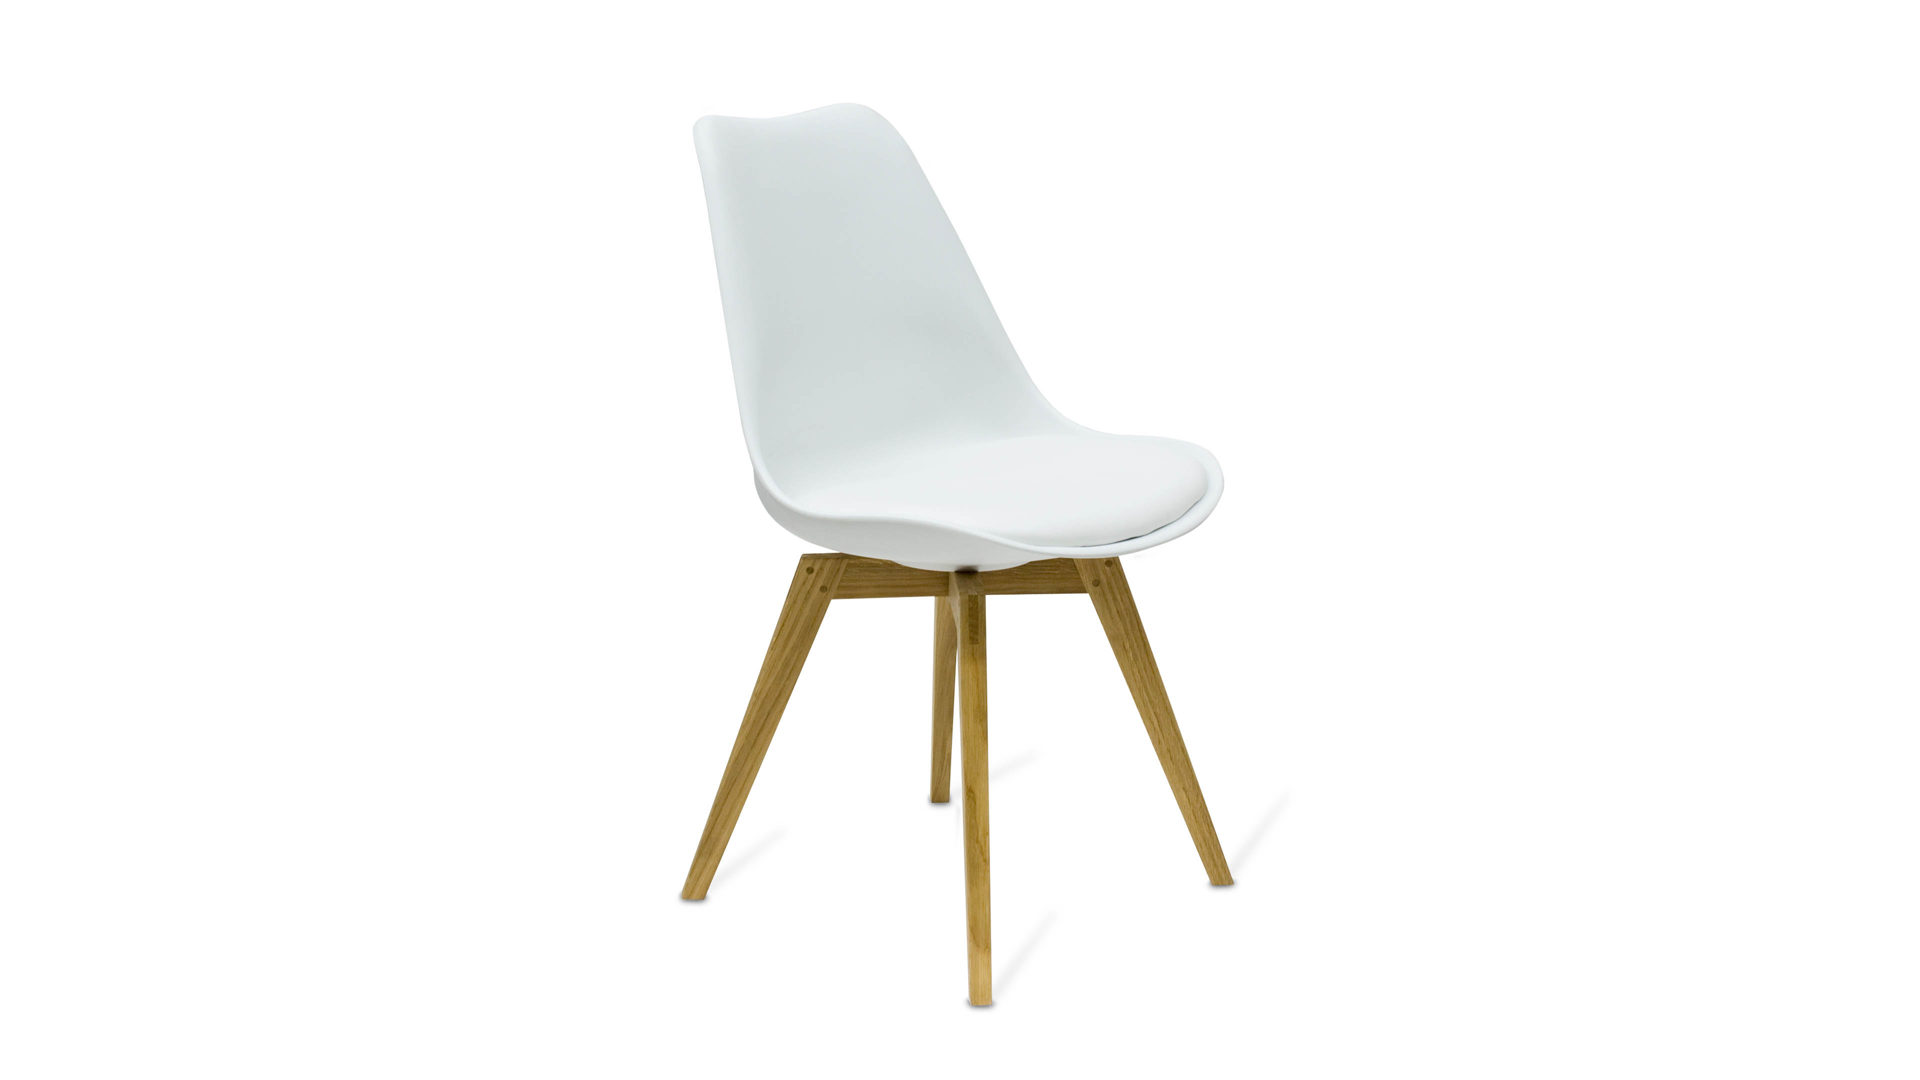 Vierfußstuhl Tenzo aus Kunststoff in Weiß Stuhl, der als bequemes Sitzmöbel überzeugt  Weiß & Eiche